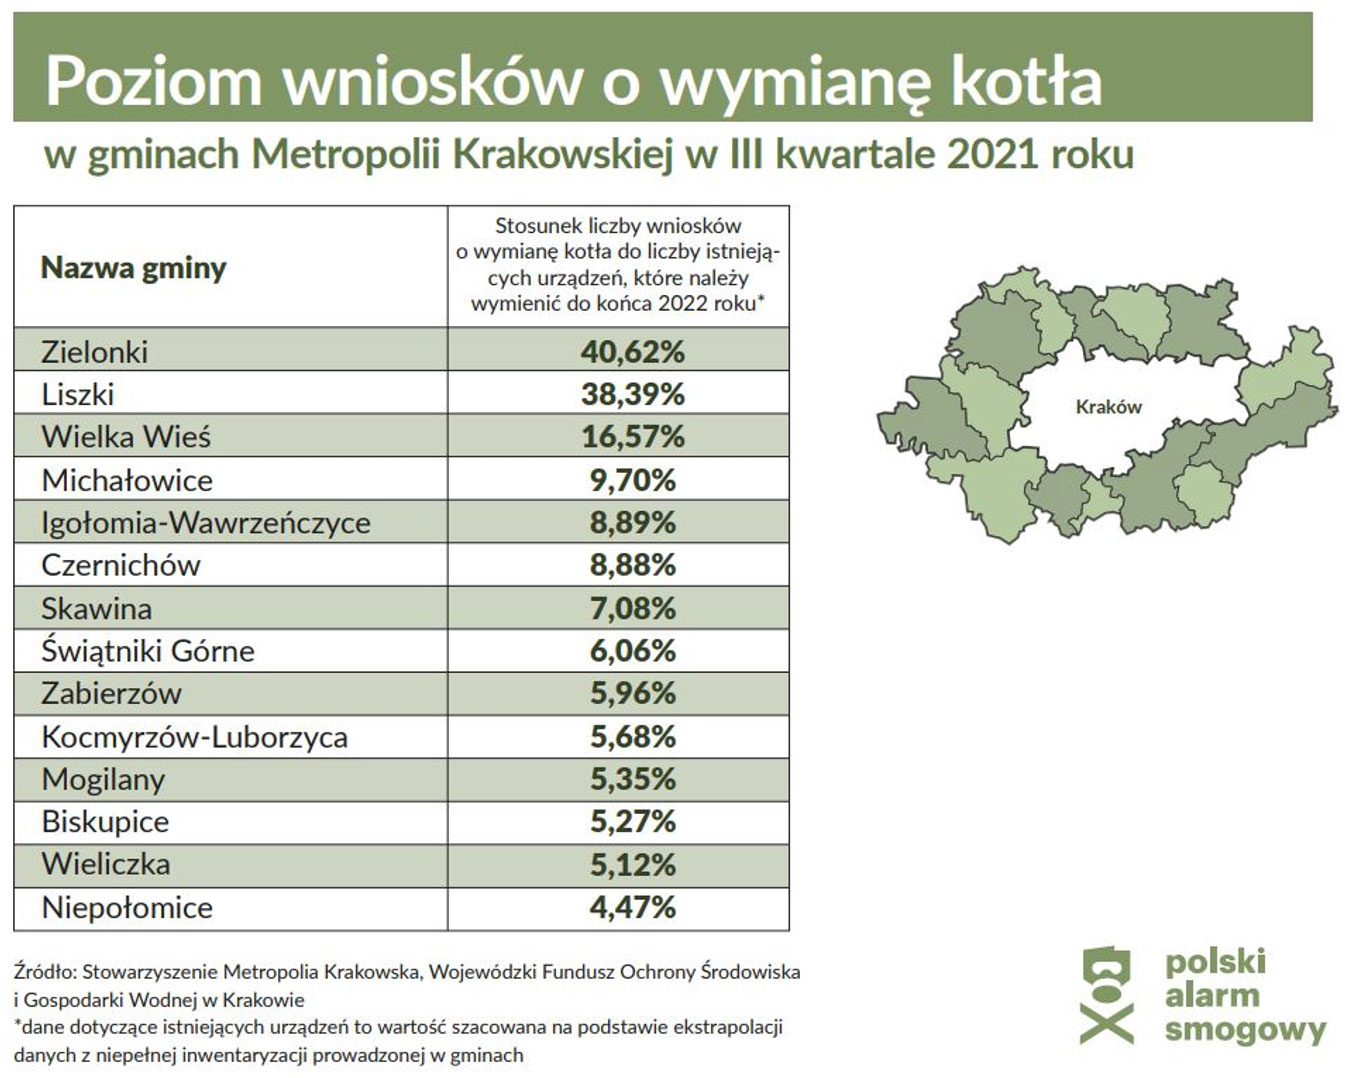 Poziom wniosków o wymianę kotła w gminach Metropolii Krakowskiej w III kwartale 2021 roku